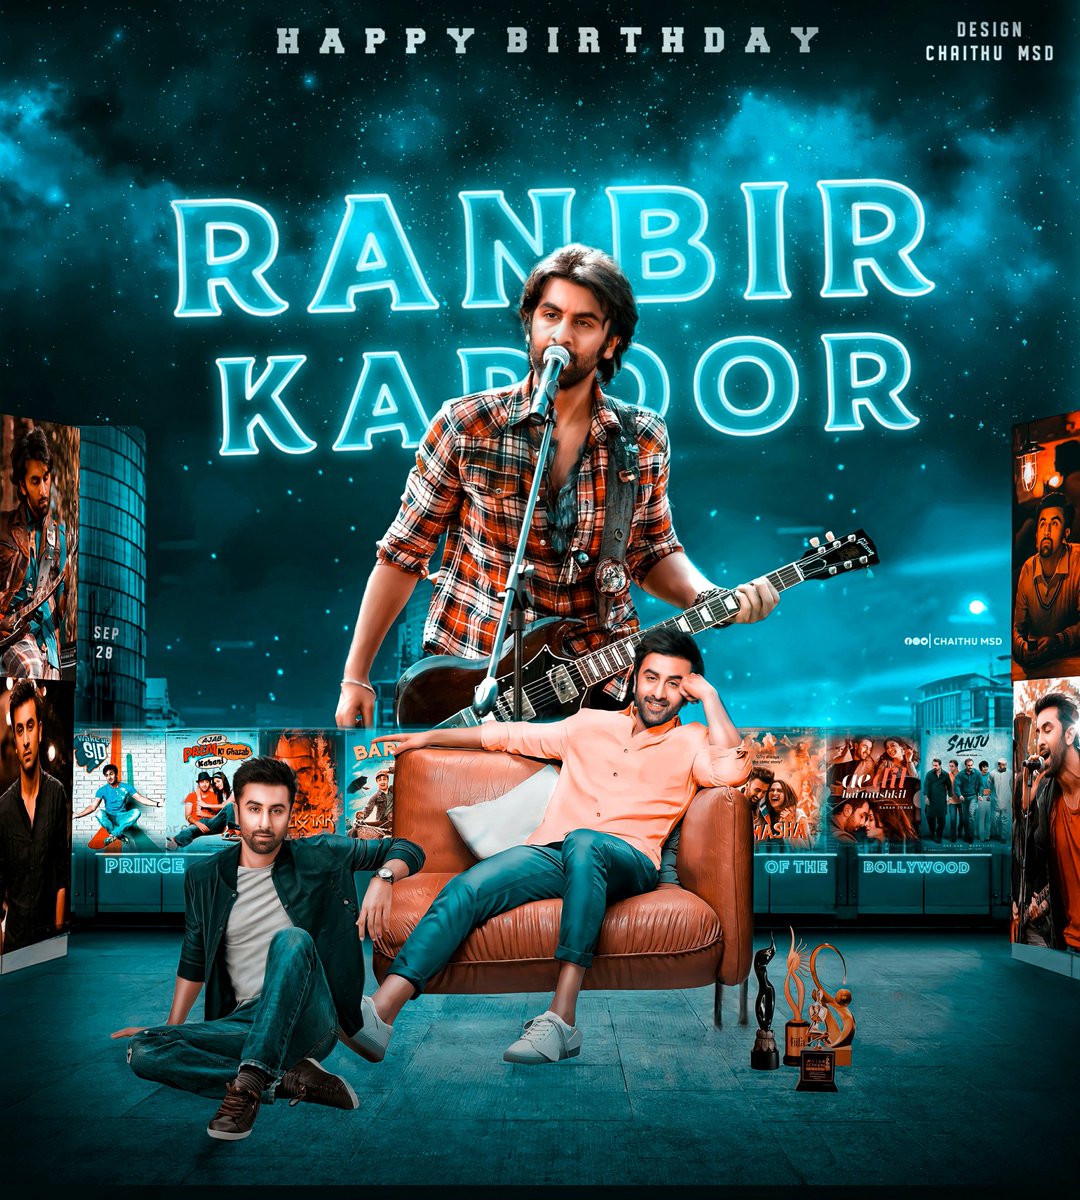 Here it is Ranbir Kapoor Birthday CDP from my side Hd link : drive.google.com/file/d/1m6dNqd… #RanbirKapoorBirthdayCDP #RanbirKapoor #Ranbir @RanbirKUniverse @RanbirTrends @RanbirTeluguFC @Ranbir_Kingdom